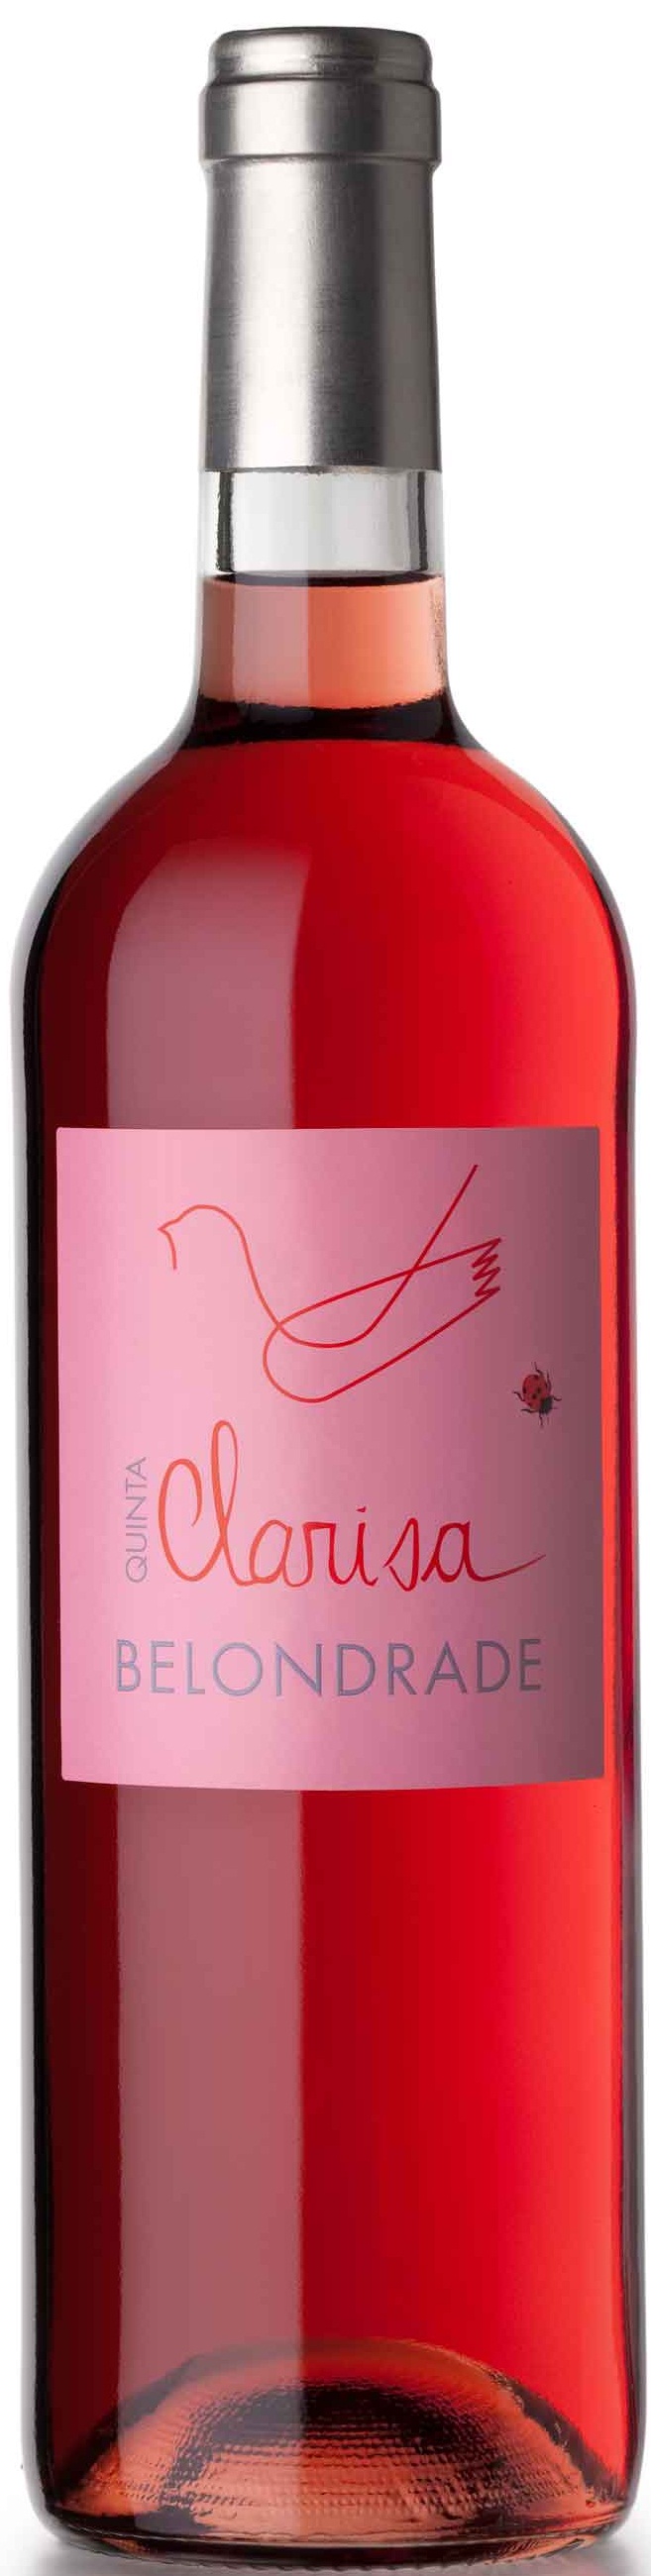 Image of Wine bottle Quinta Clarisa Belondrade